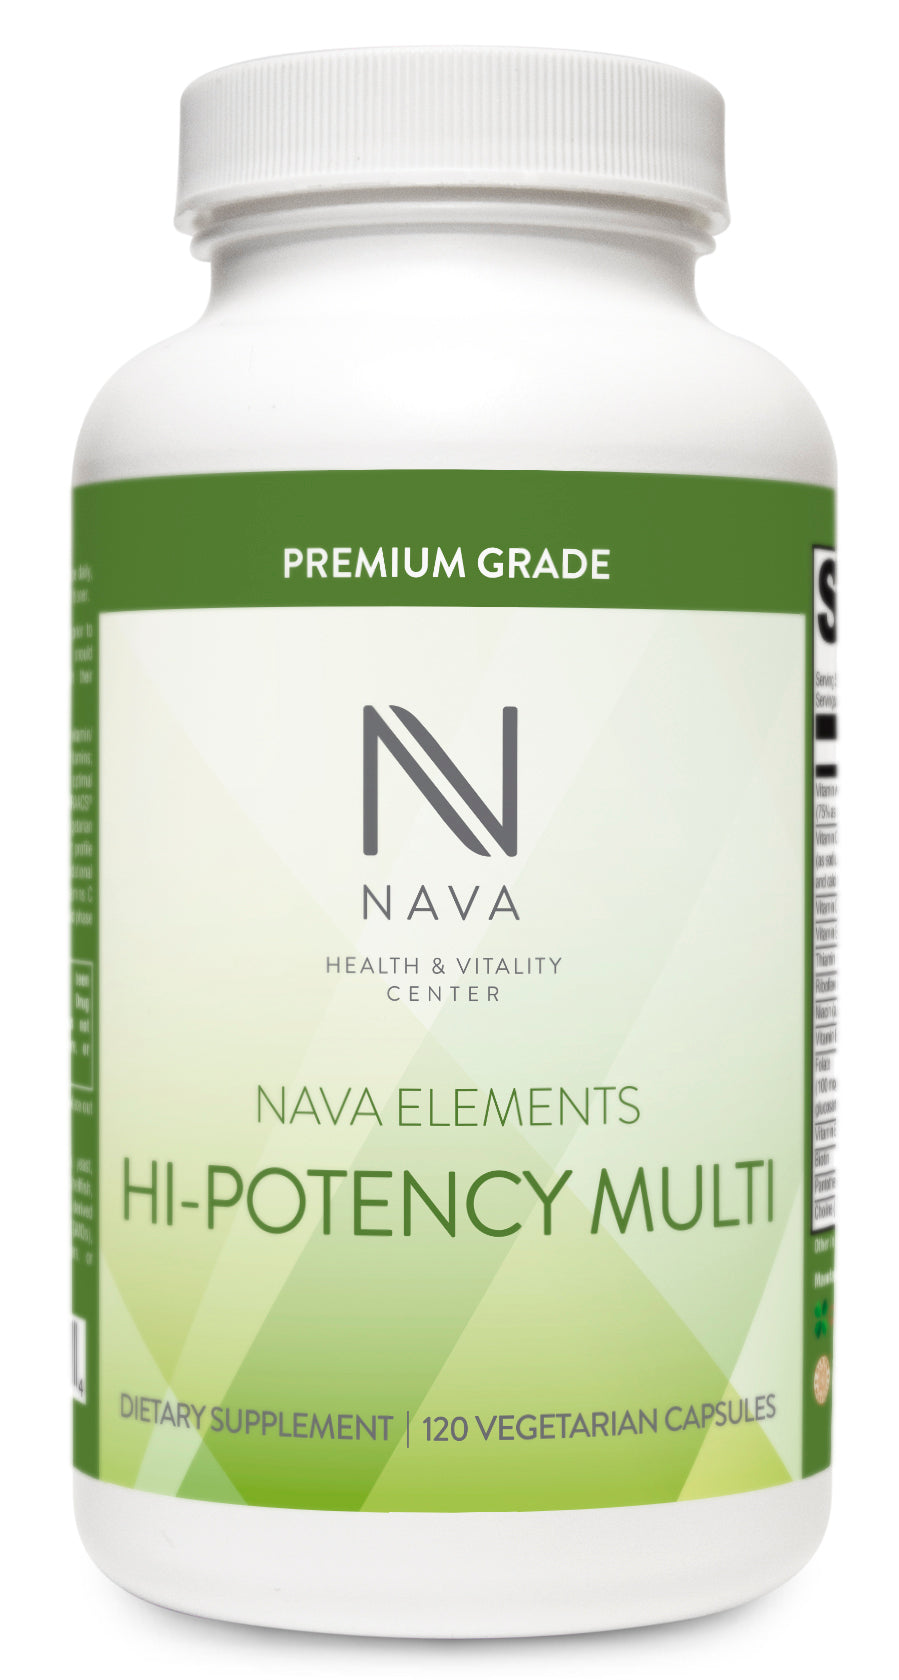 Hi-Potency Multi (120 ct)